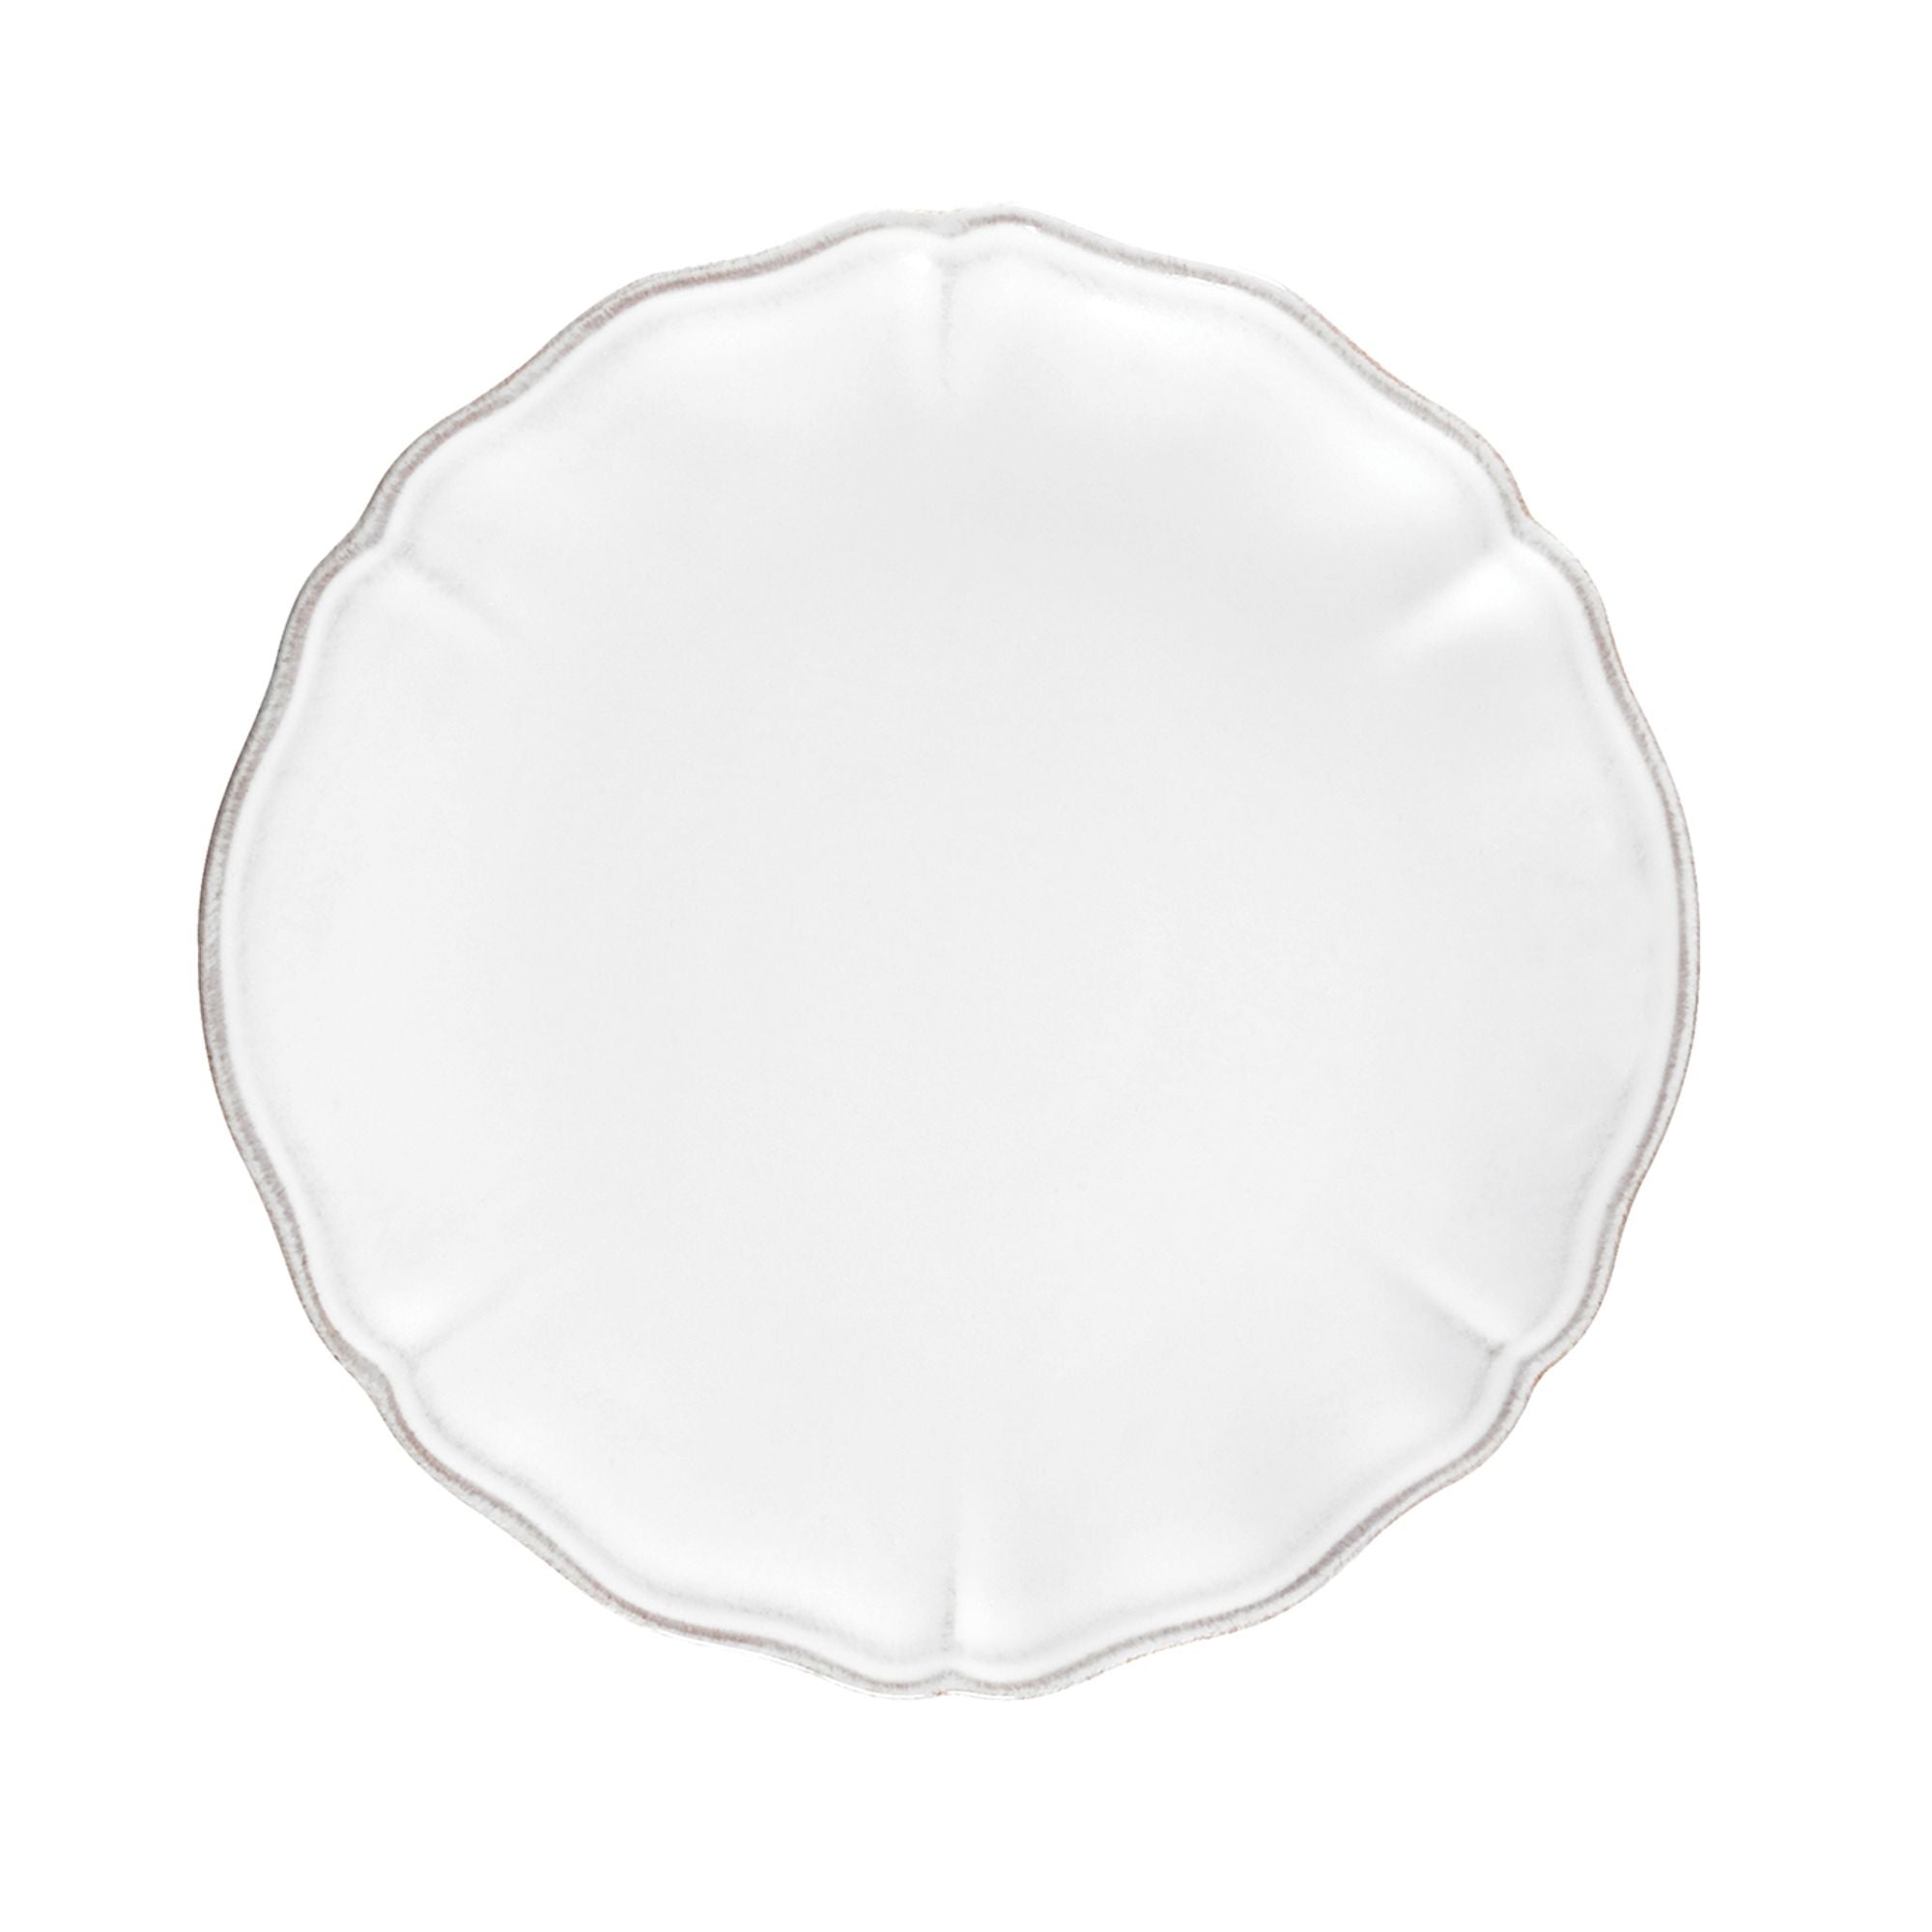 Alentejo Salad/Dessert Plate 8" White